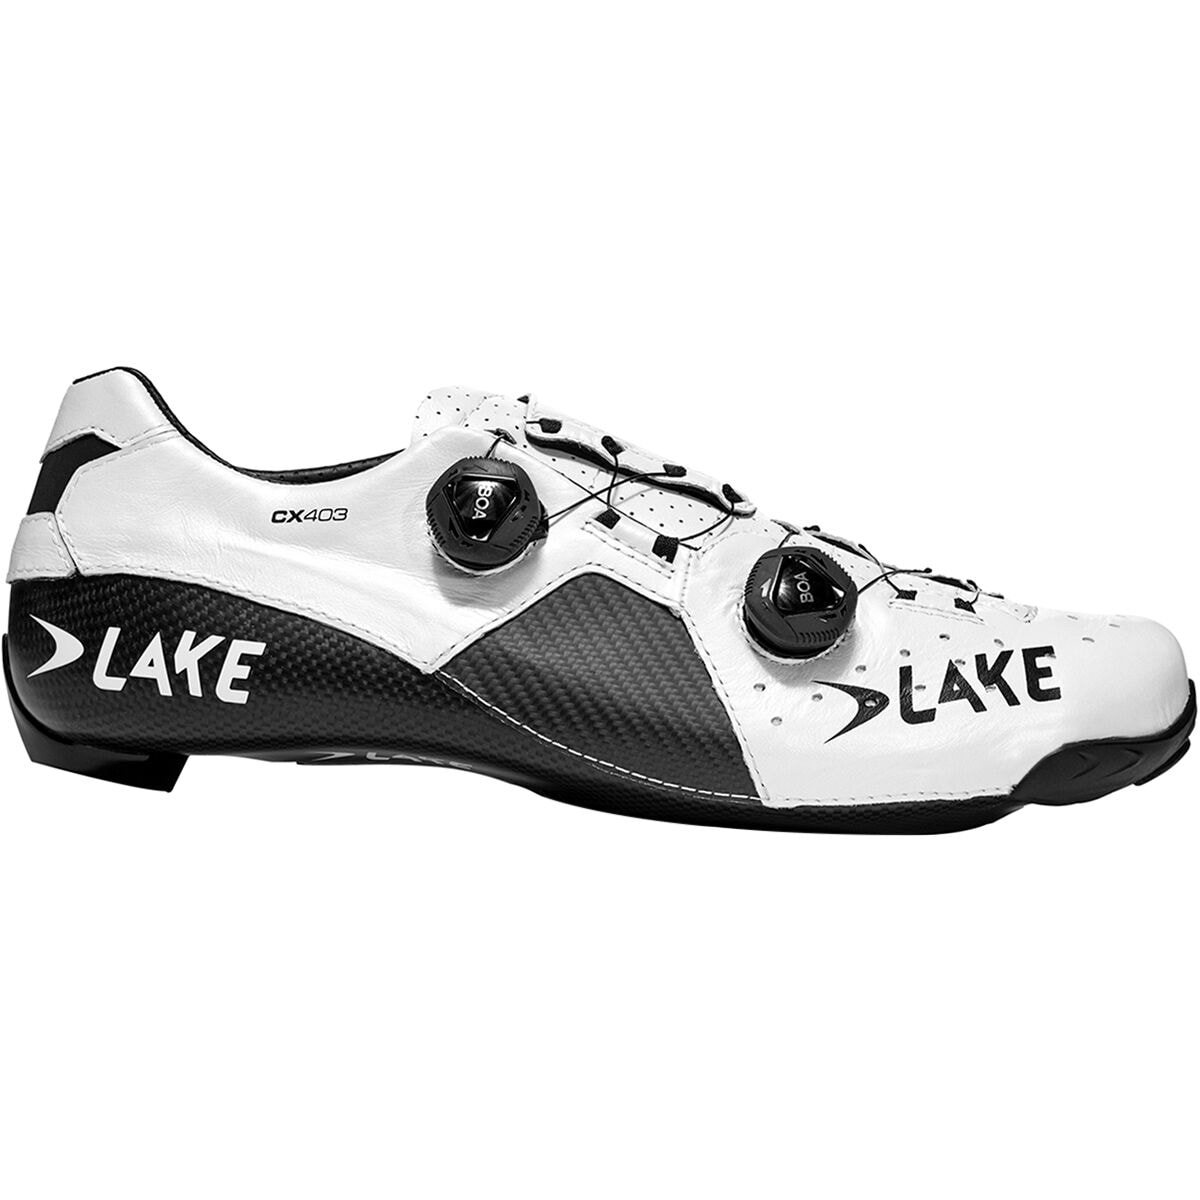 Lake CX403 Speedplay自行车…